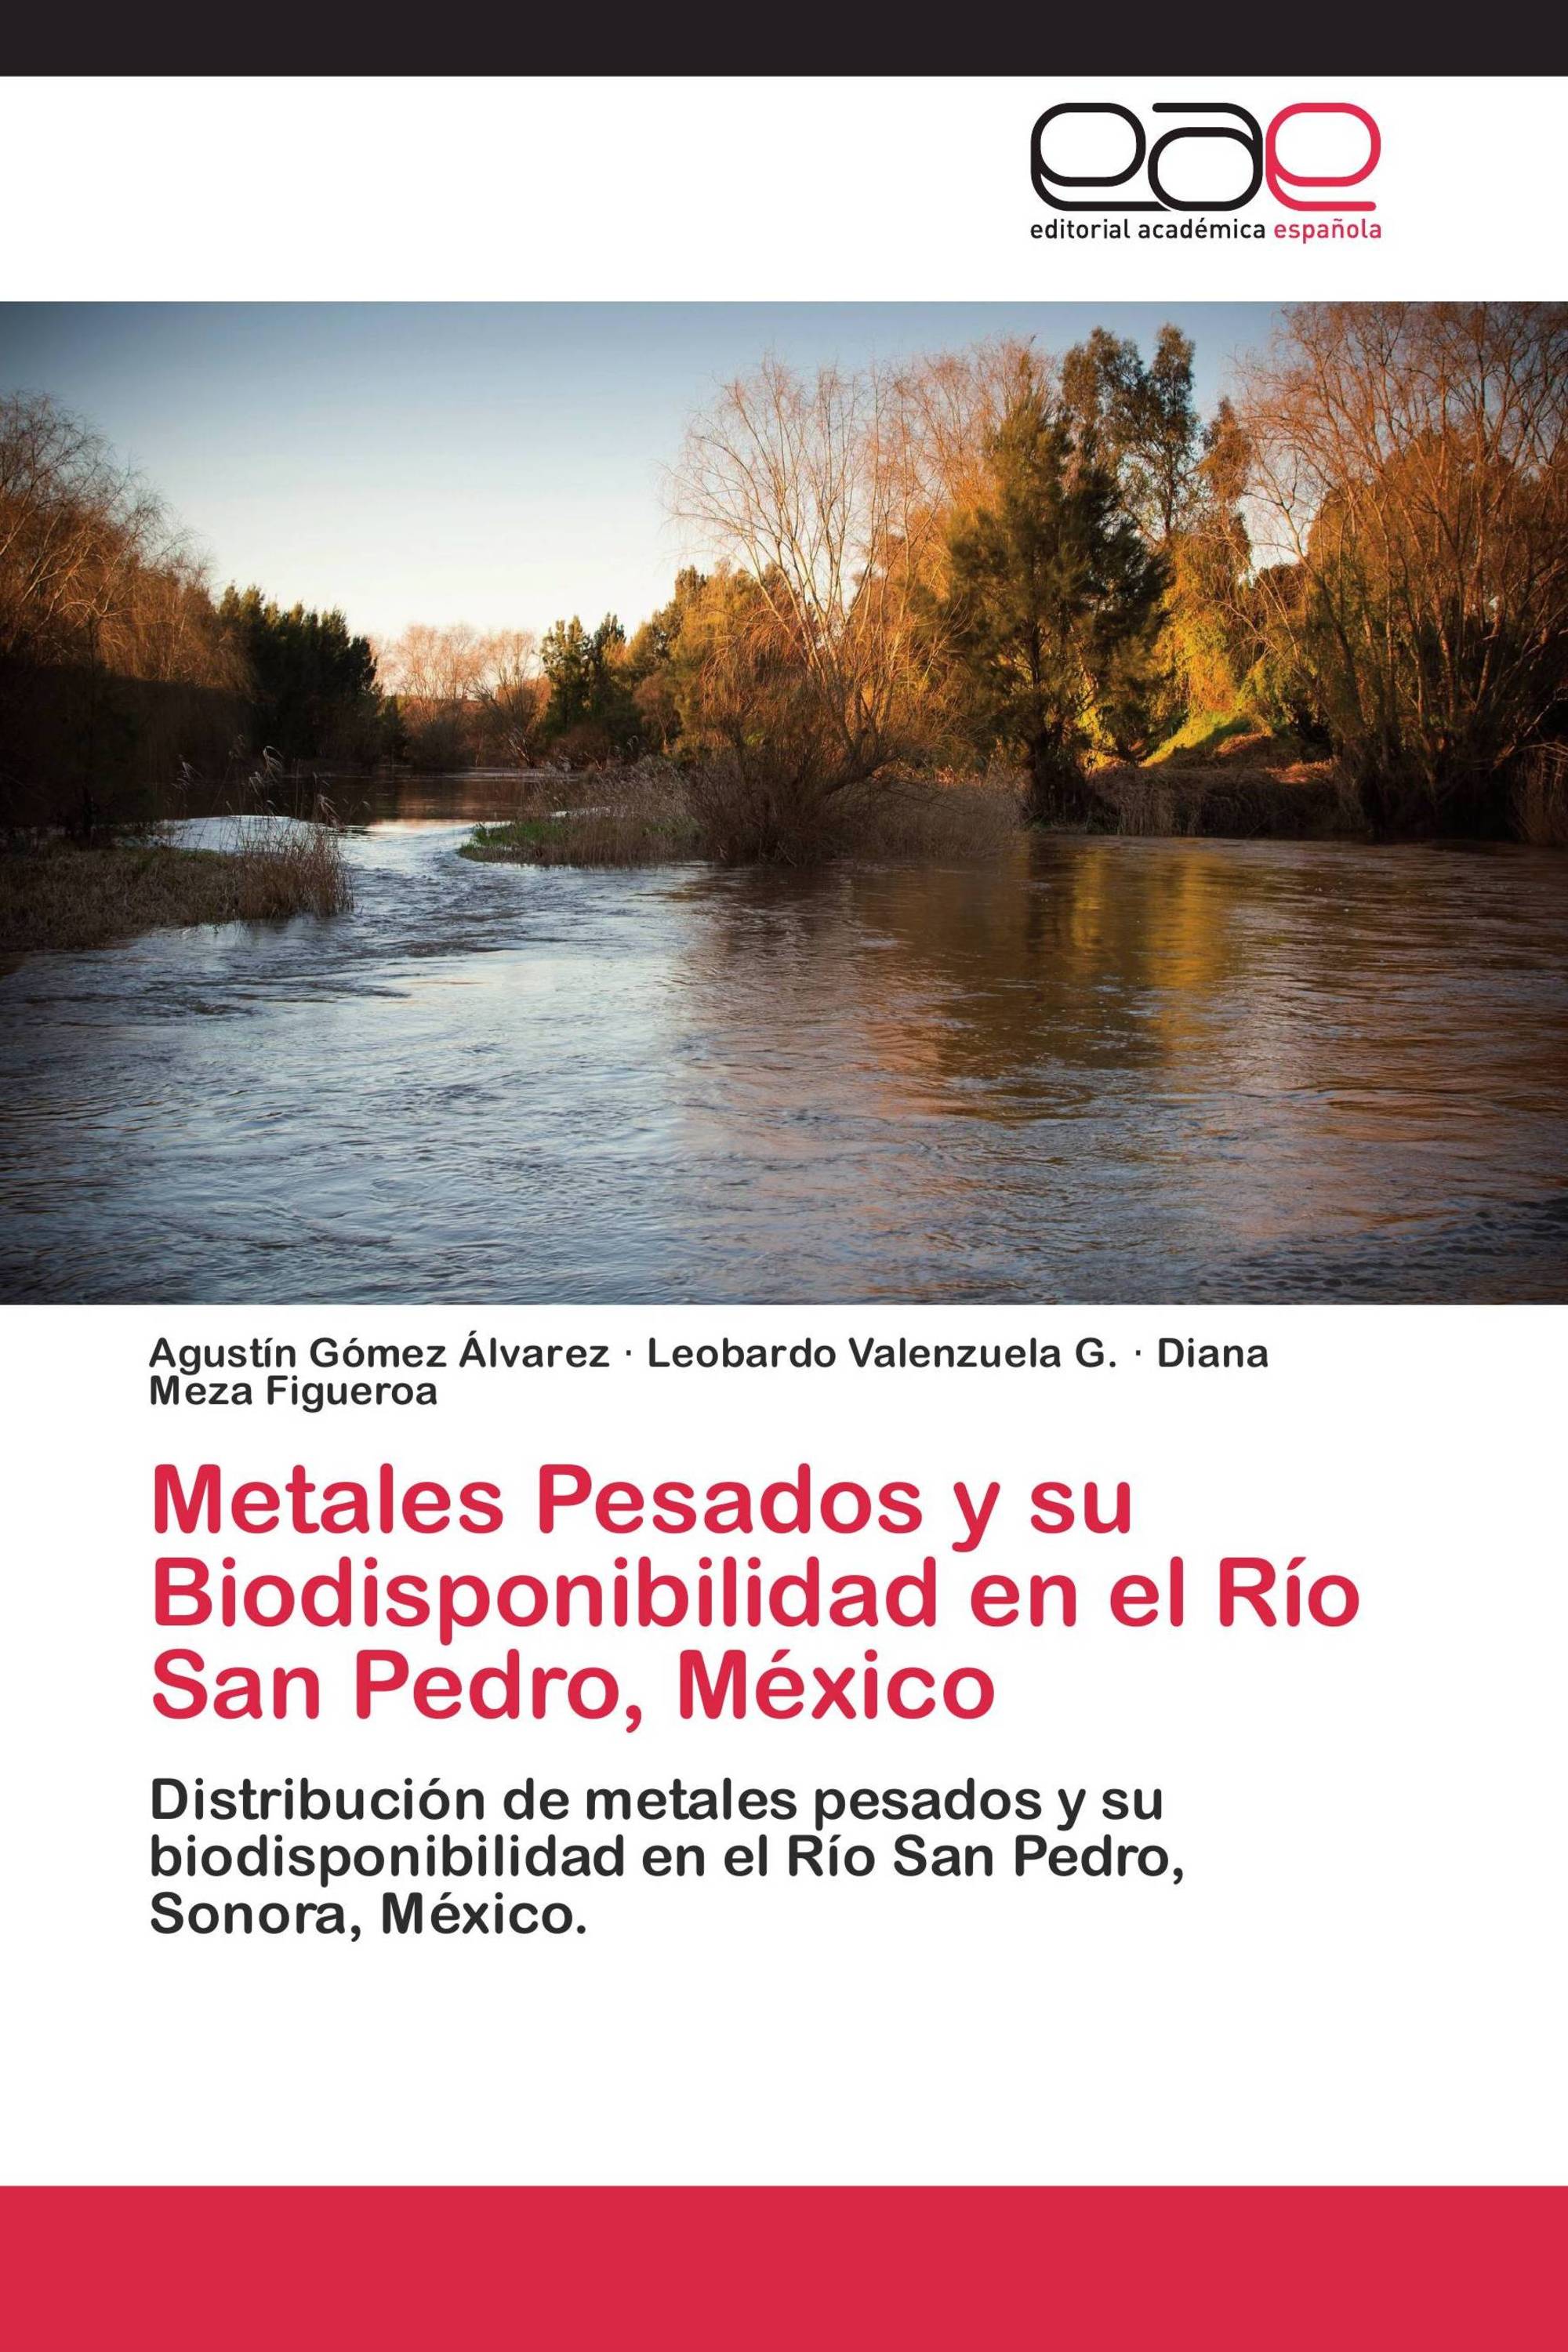 Metales Pesados y su Biodisponibilidad en el Río San Pedro, México